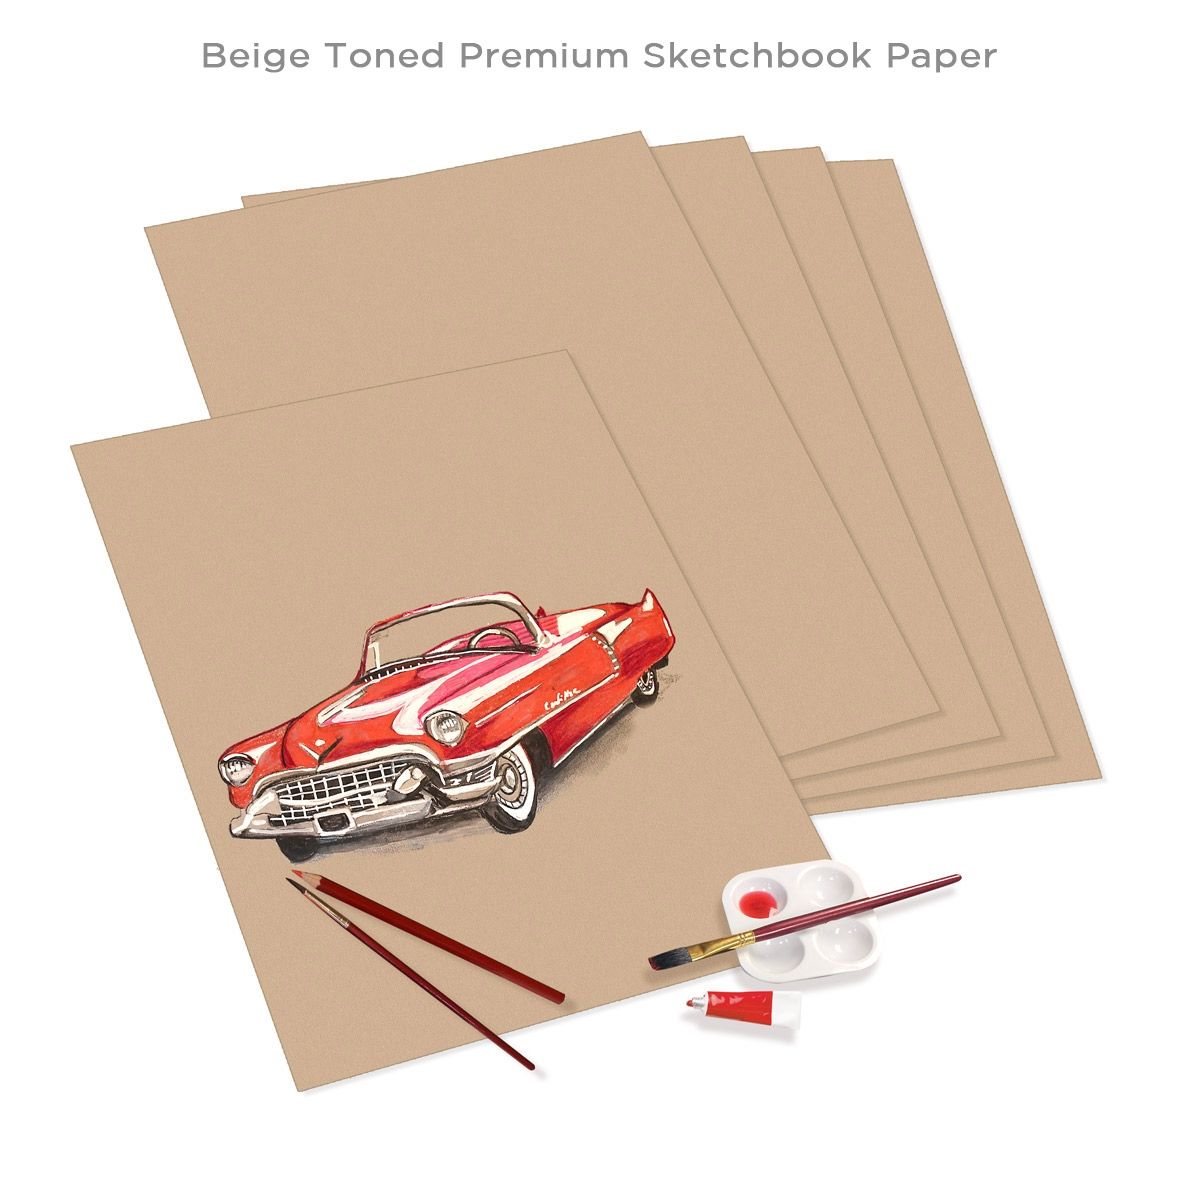 Beige Toned Premium Sketchbook Paper with Art